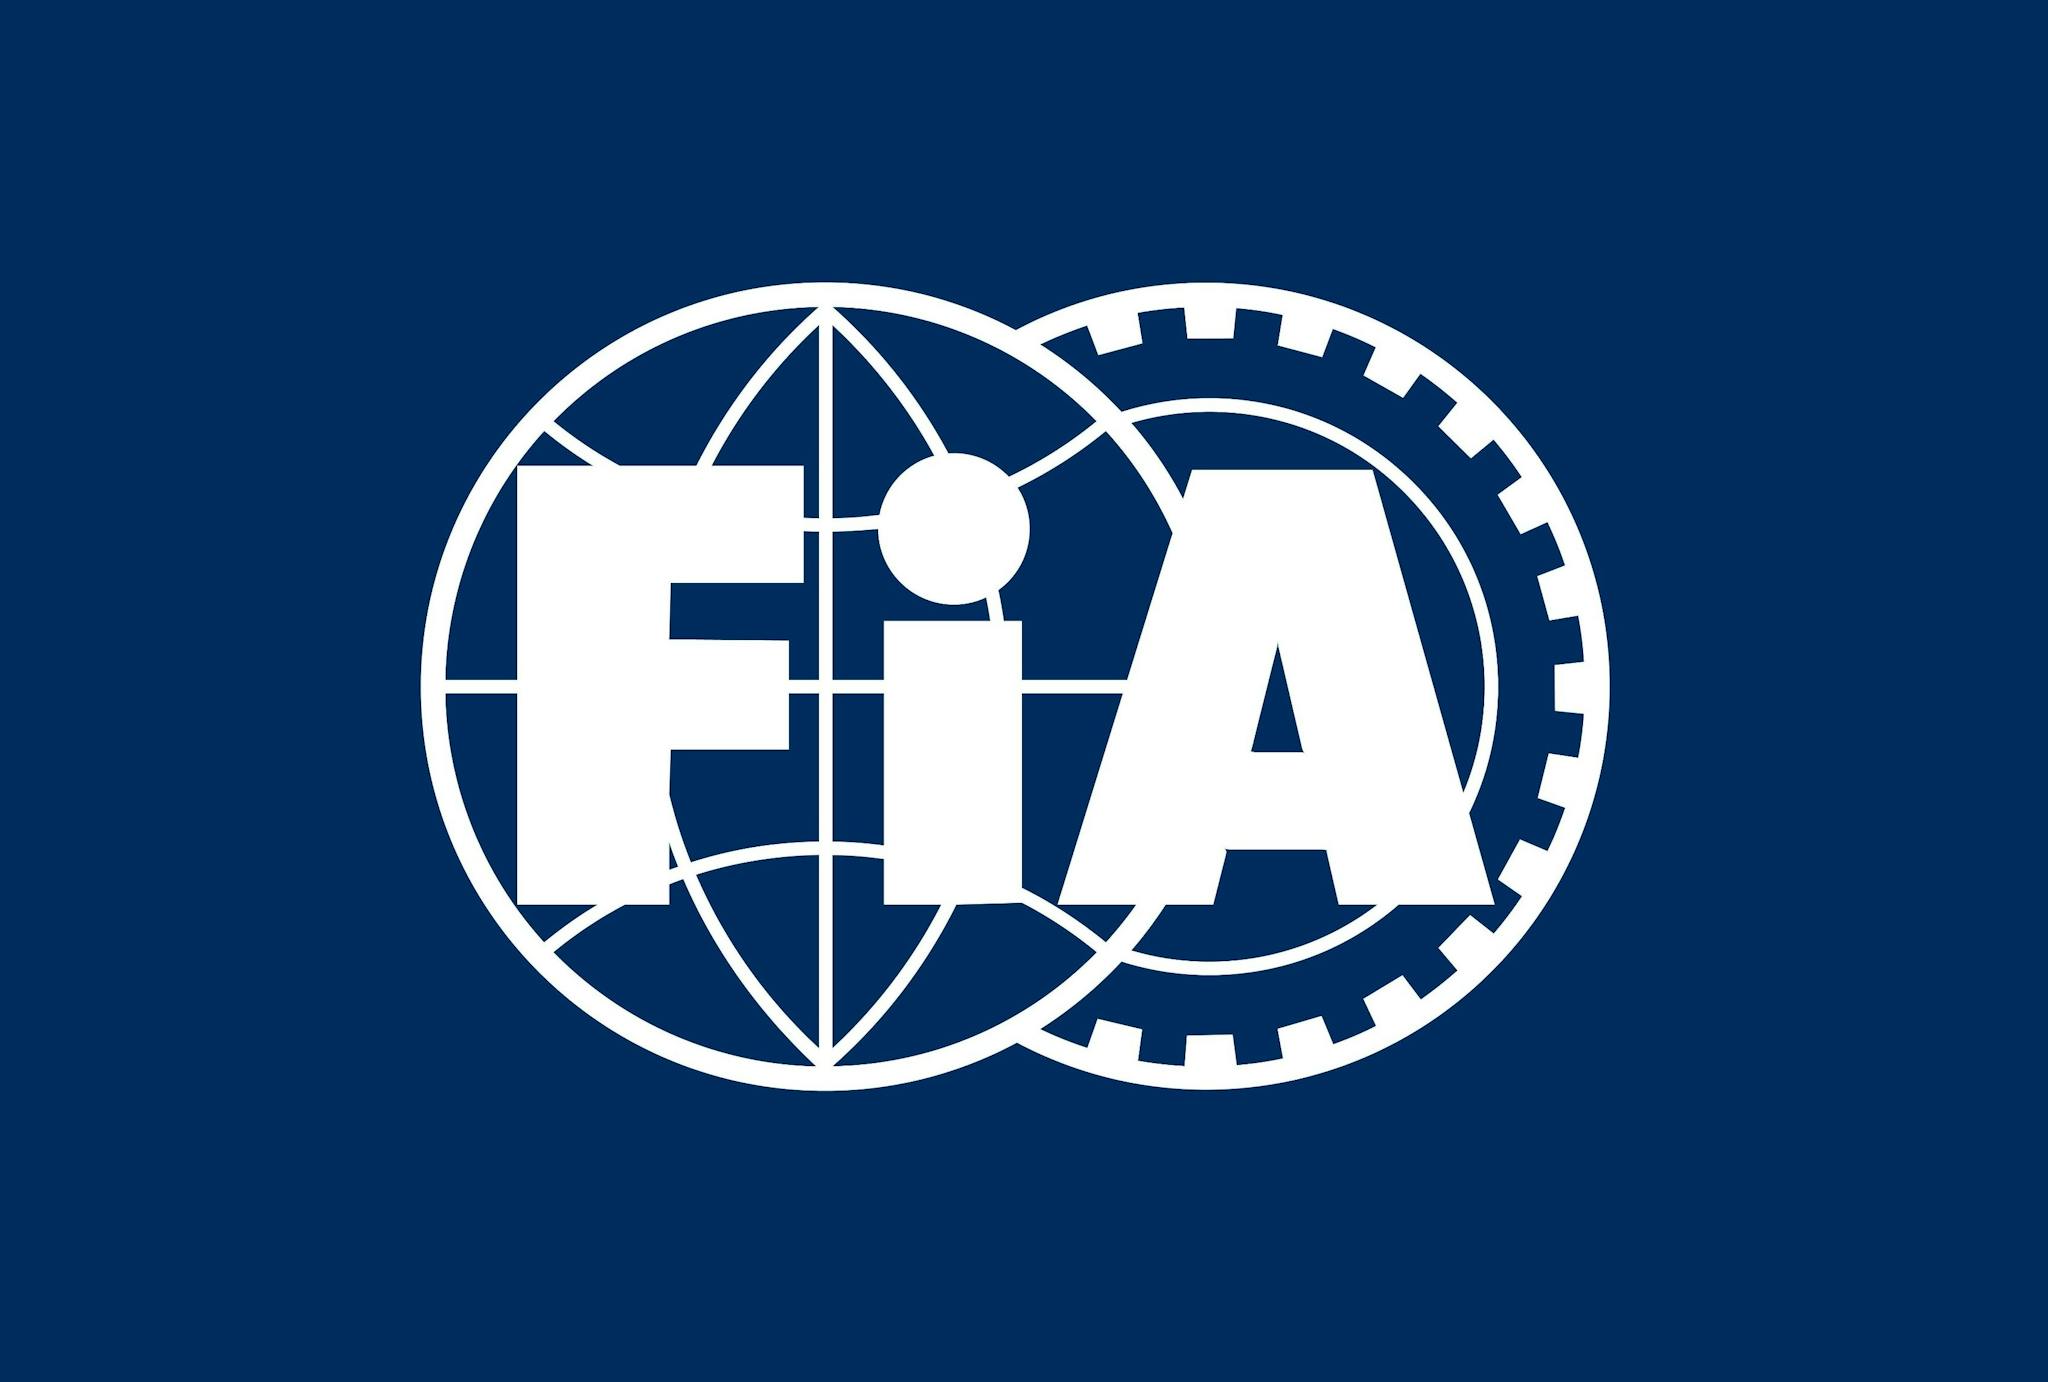 FIA podjęła walkę ze sprytnym obchodzeniem limitu wydatków